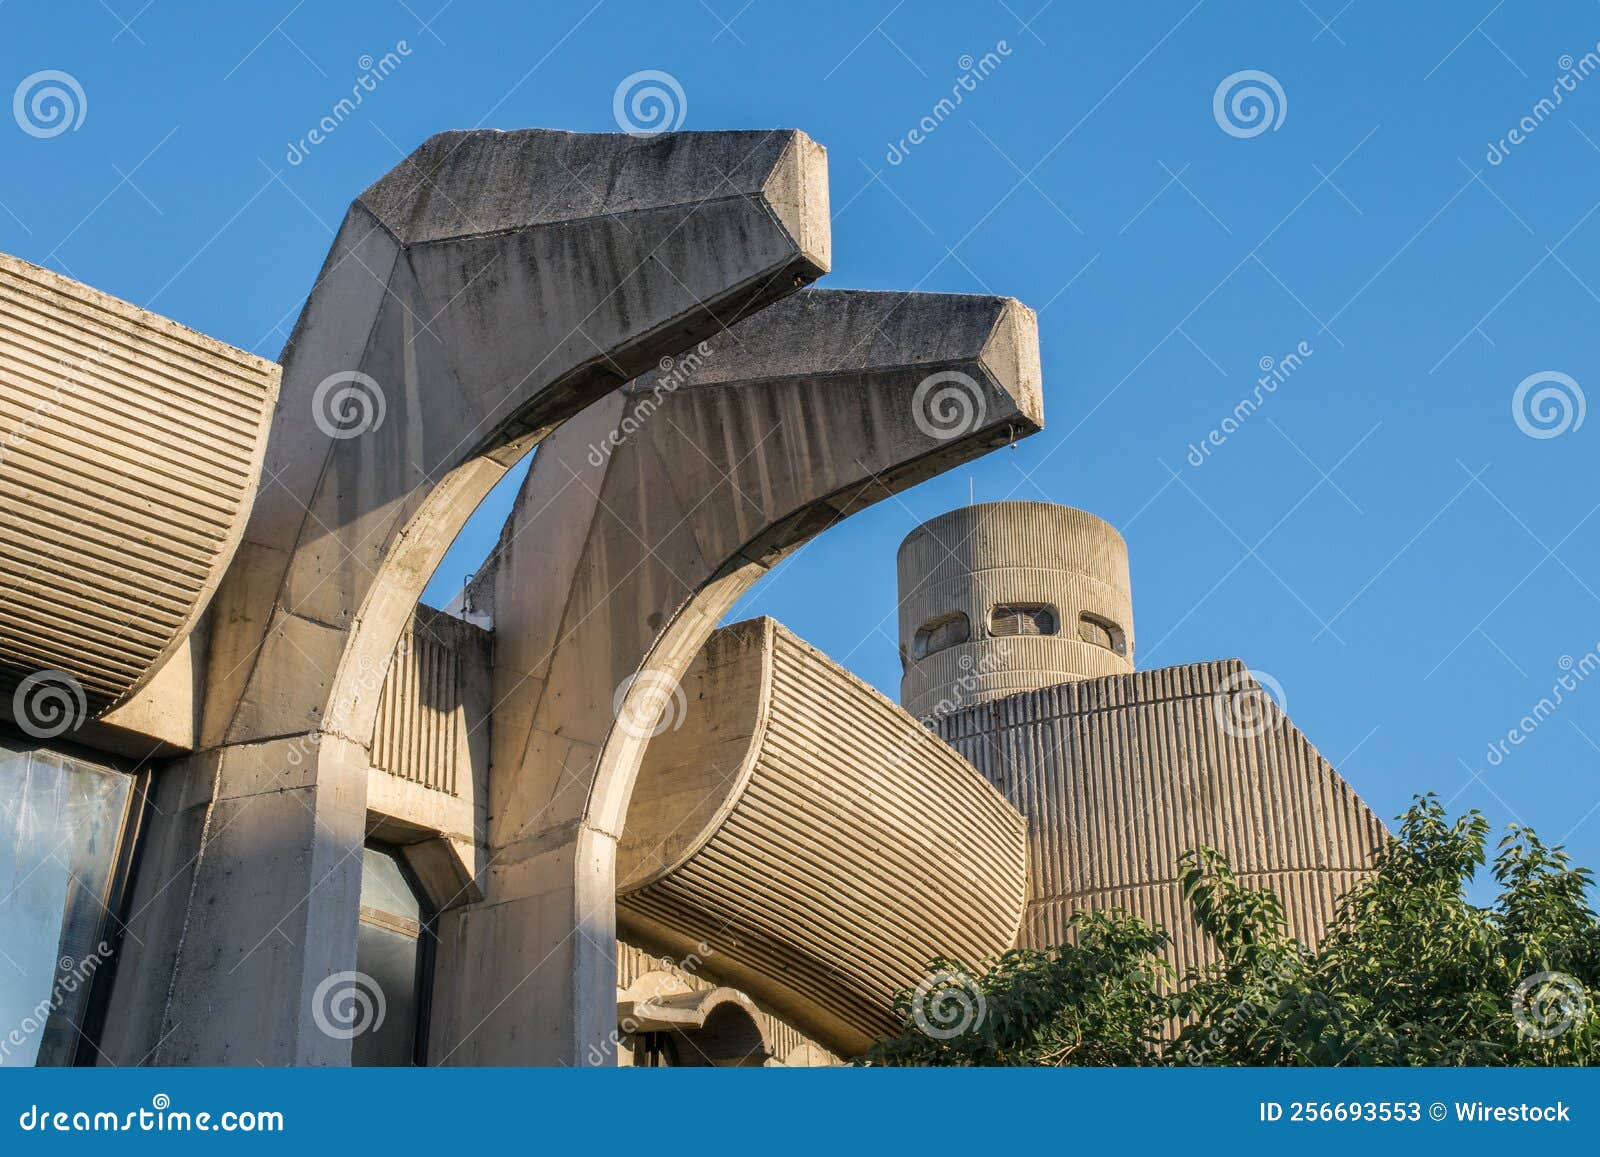 Caractéristiques Du Bureau De Poste Central à Skopje Nord-macédoine Exemple  D'architecture Brutaliste Photo stock éditorial - Image du mystérieux,  ancien: 256693553